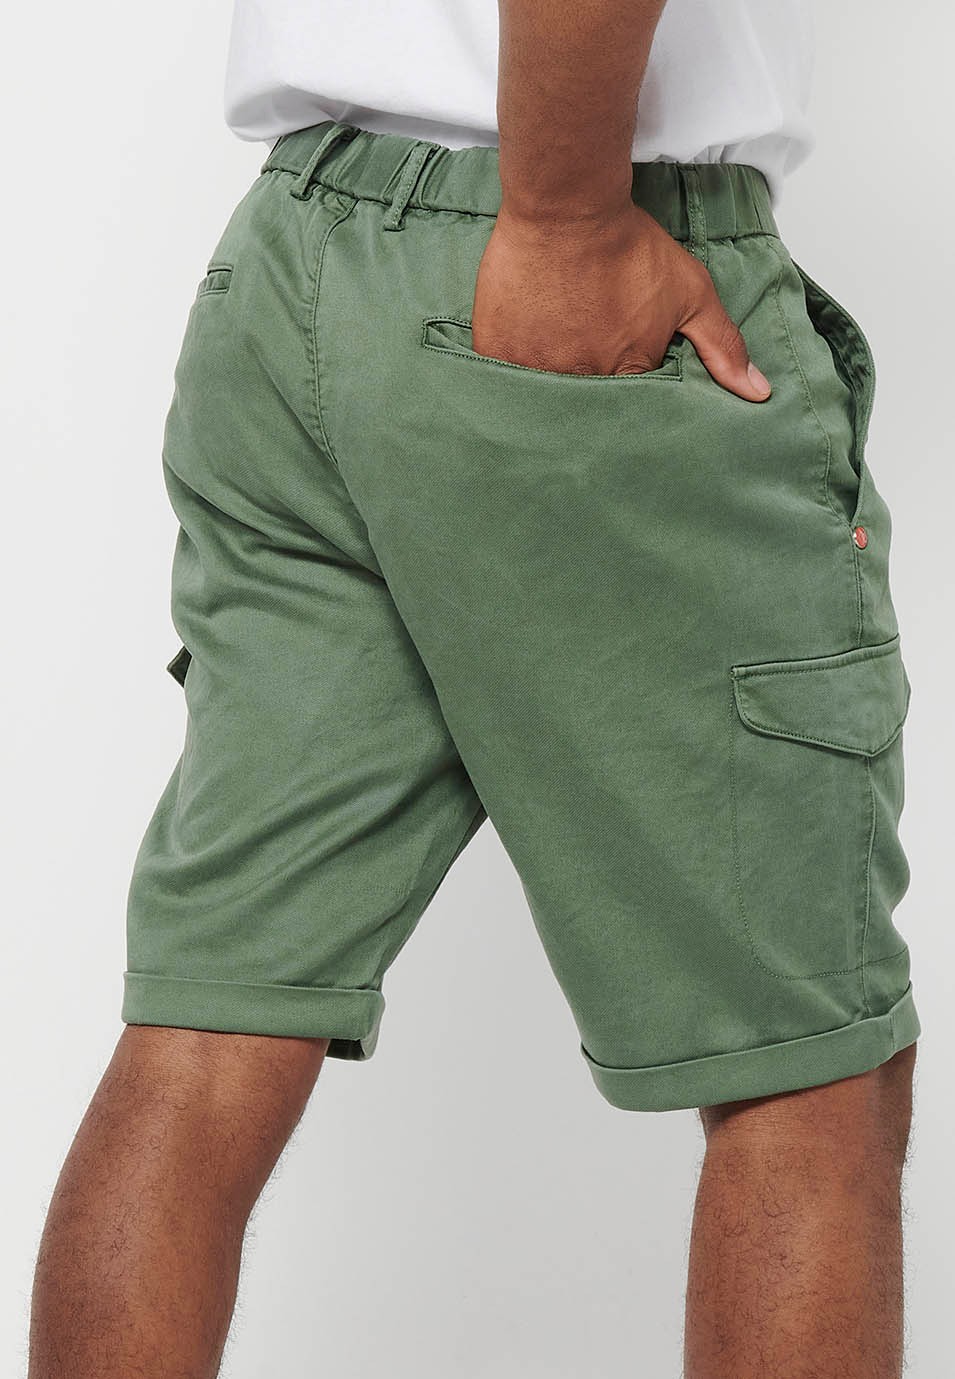 Pantalón corto con Cintura engomada y cierre con cremallera y botón con Bolsillos, dos laterales con solapa de Color Verde para Hombre 9